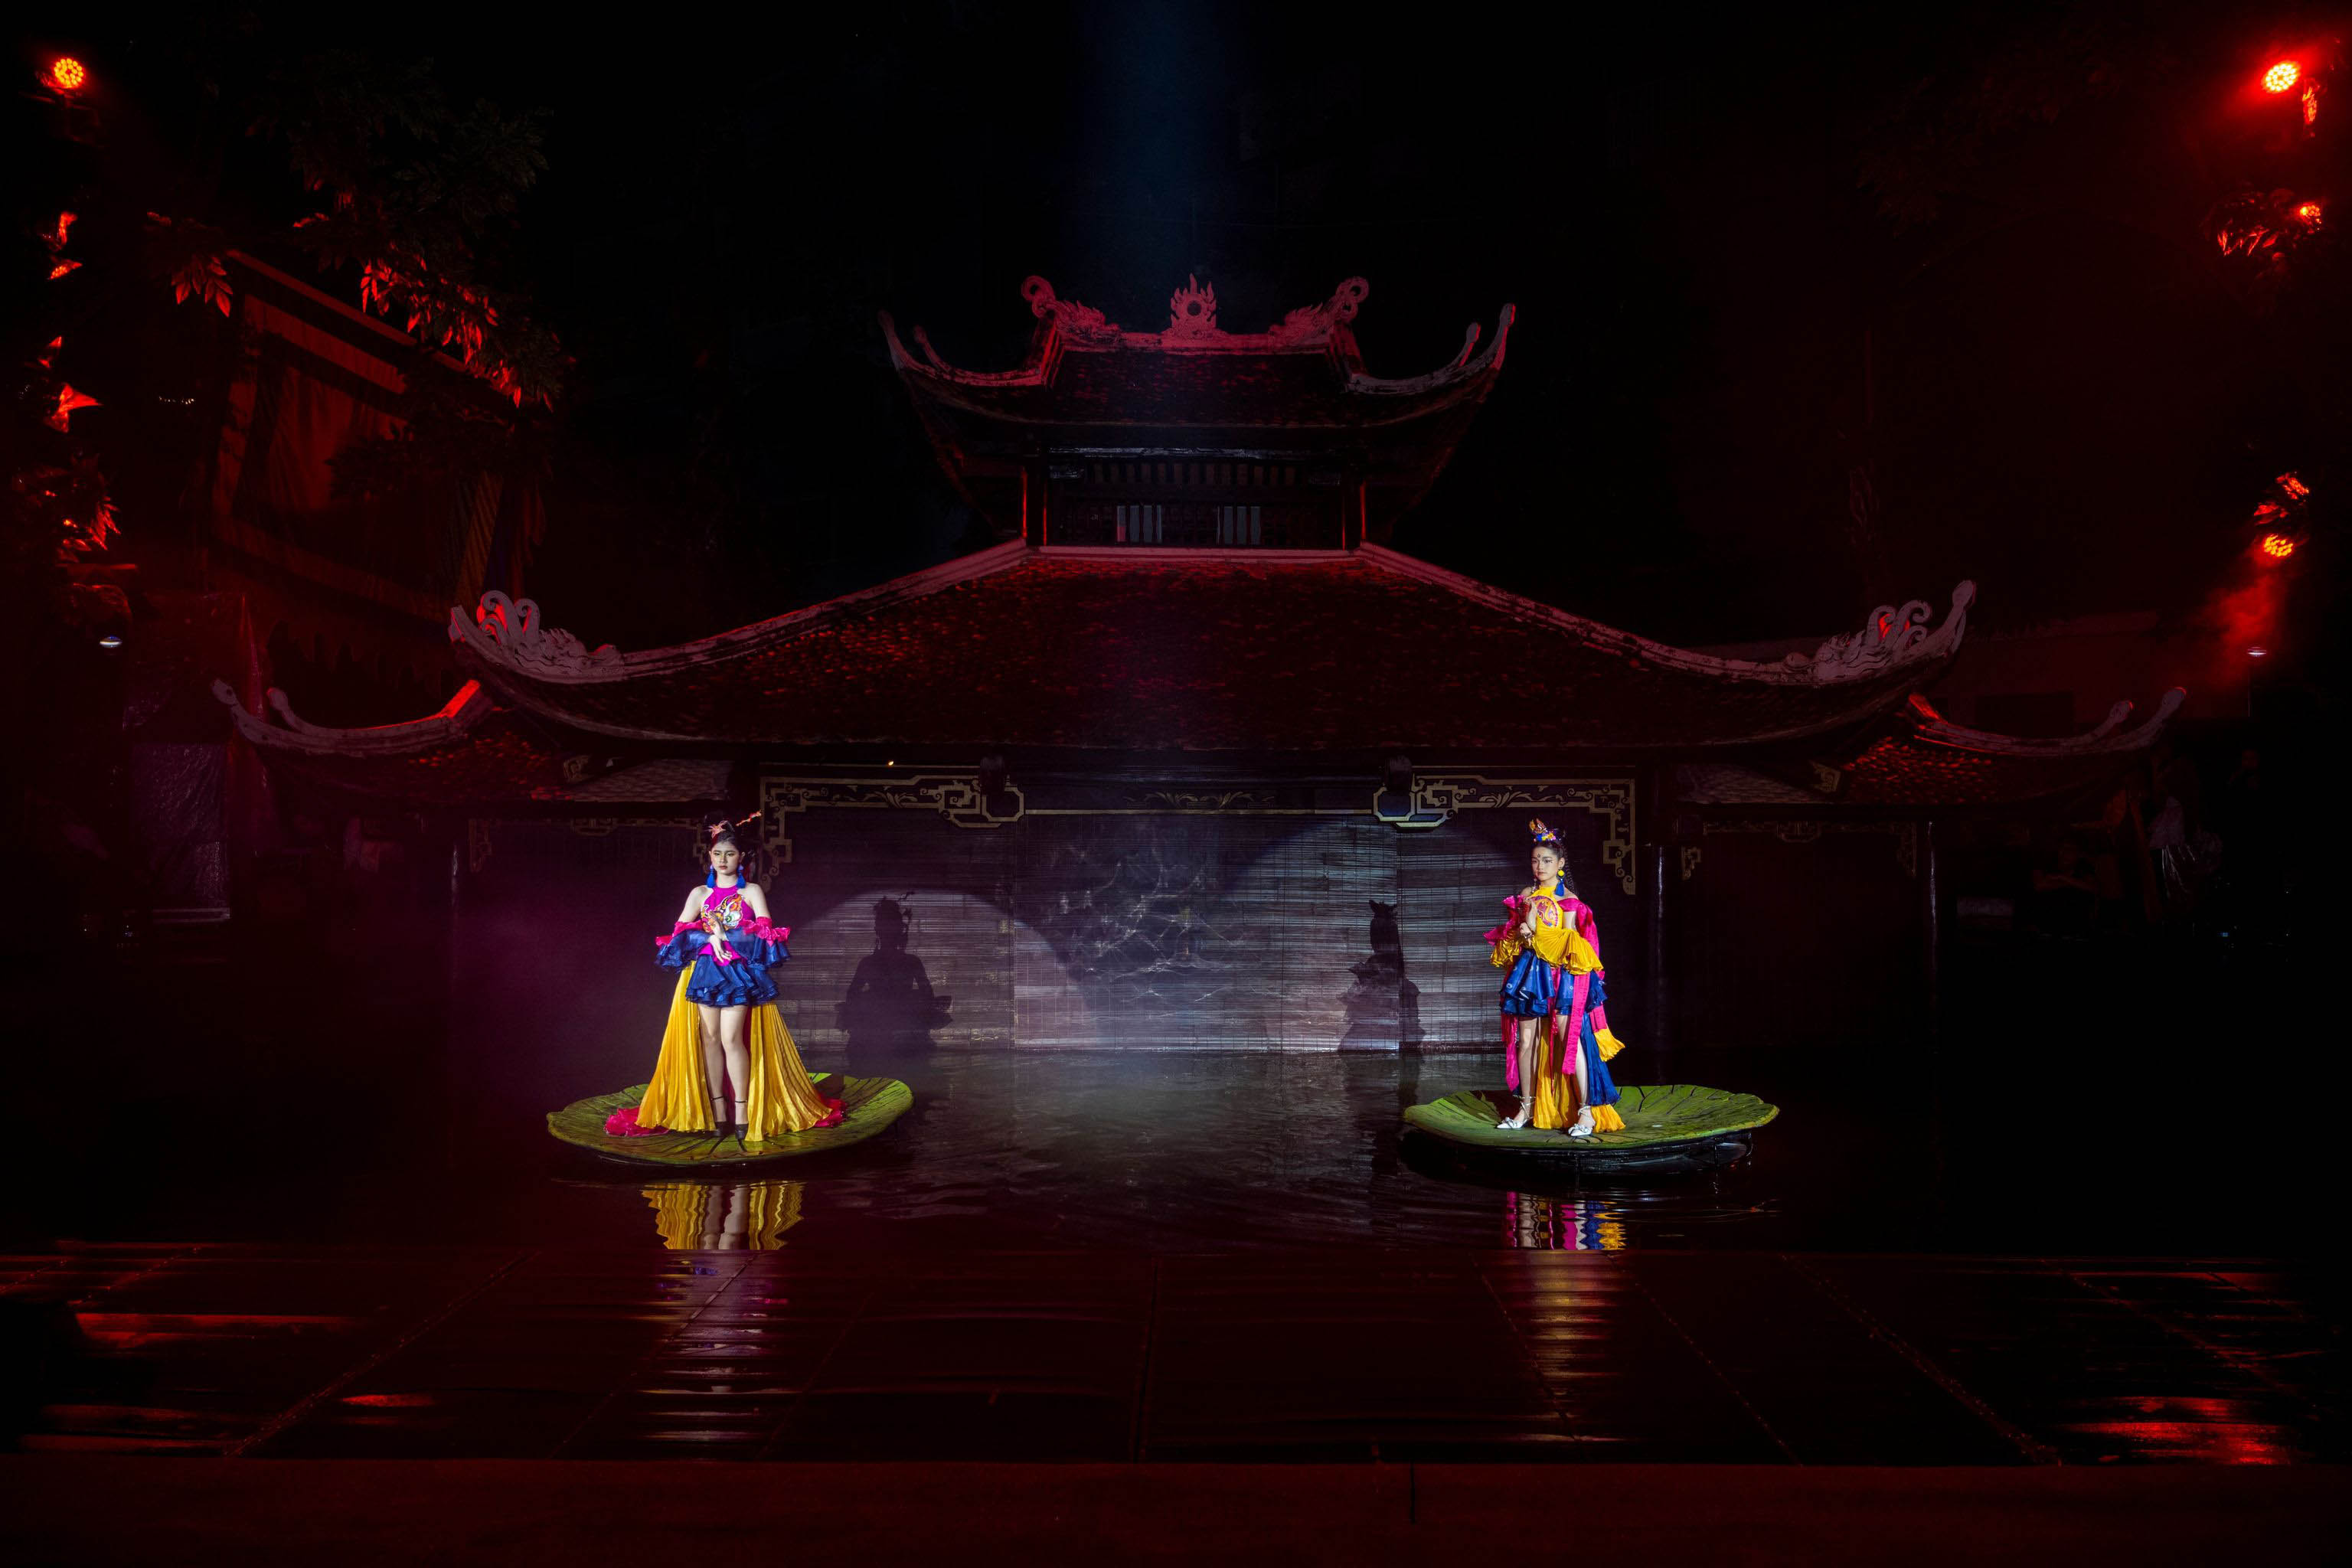 2 người mẫu nhí gây chú ý khi catwalk trên lá sen trong show&nbsp;&nbsp;"Vĩnh họa Thăng Long"&nbsp;tại sân khấu&nbsp;Thuỷ Đình - Nhà hát Múa rối Việt Nam.